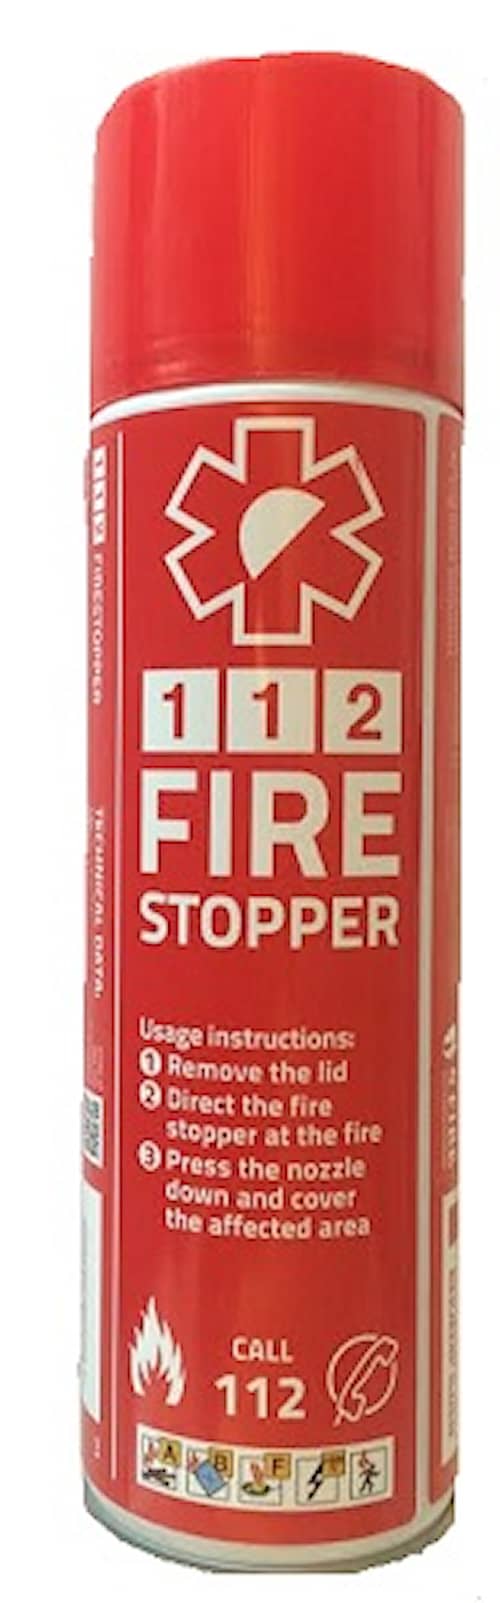 4 Fire 112 Brandslukker 400 ml spraydåse der er nem i brug